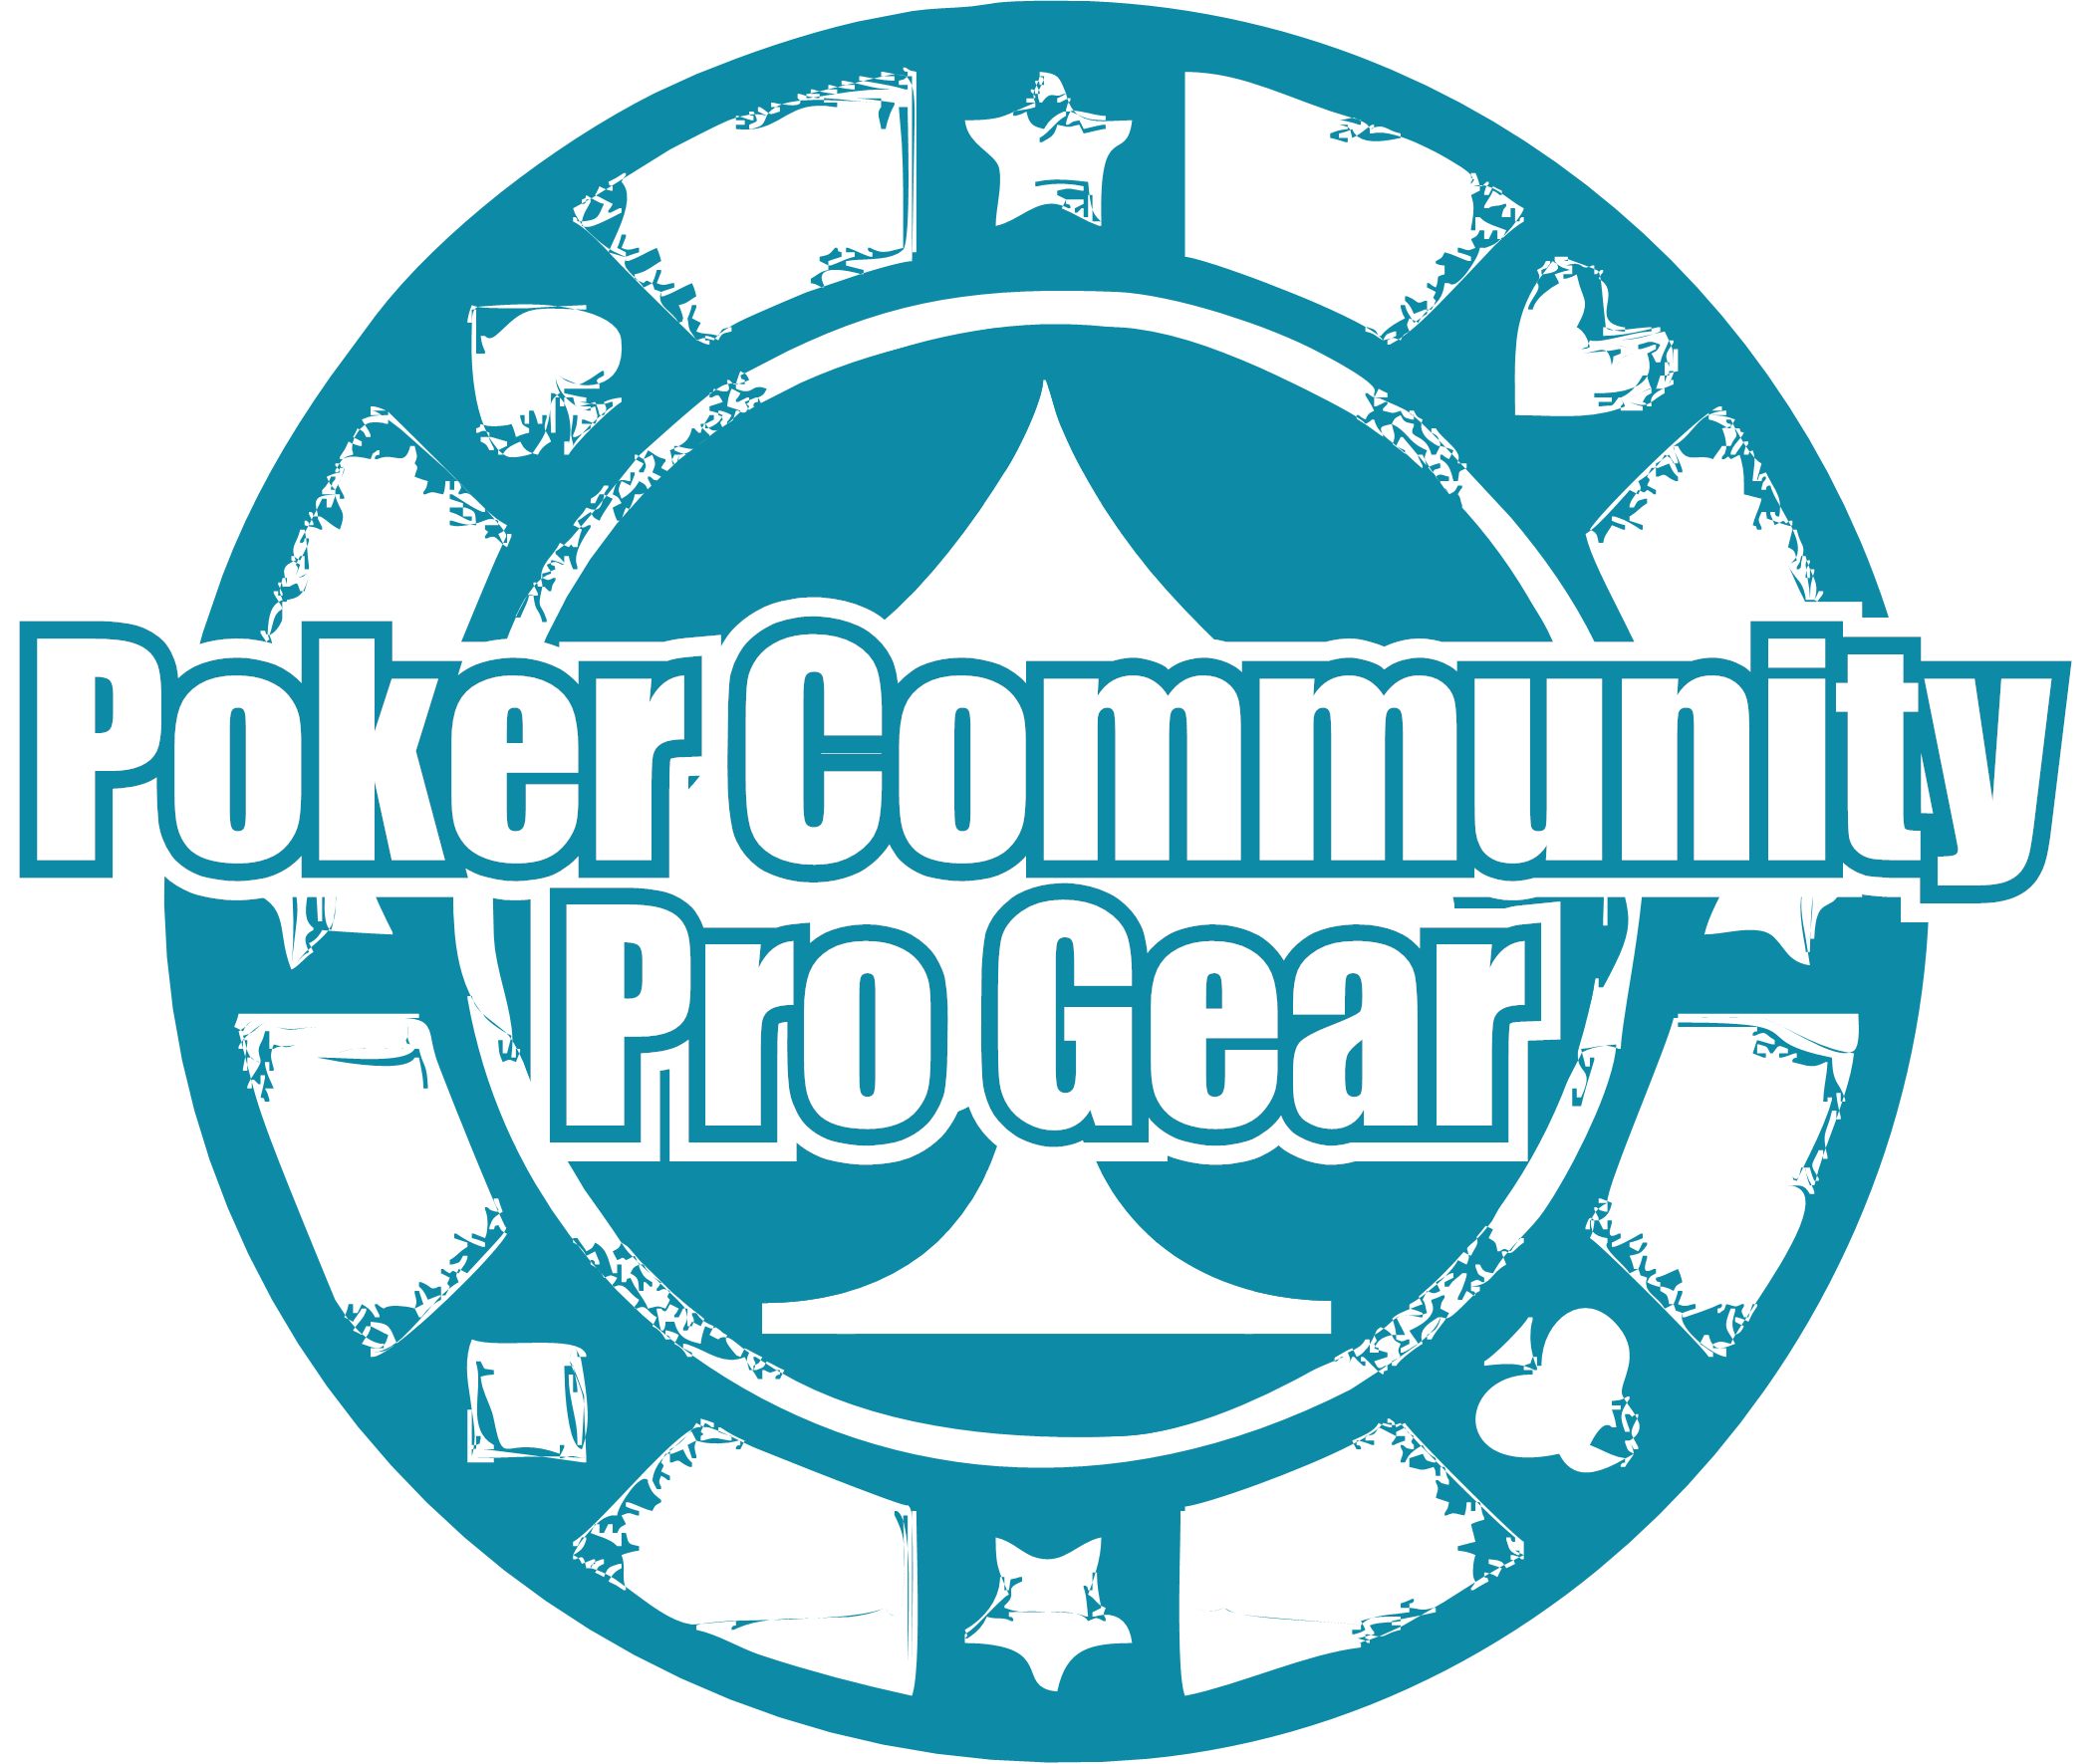 Poker Community ProGear